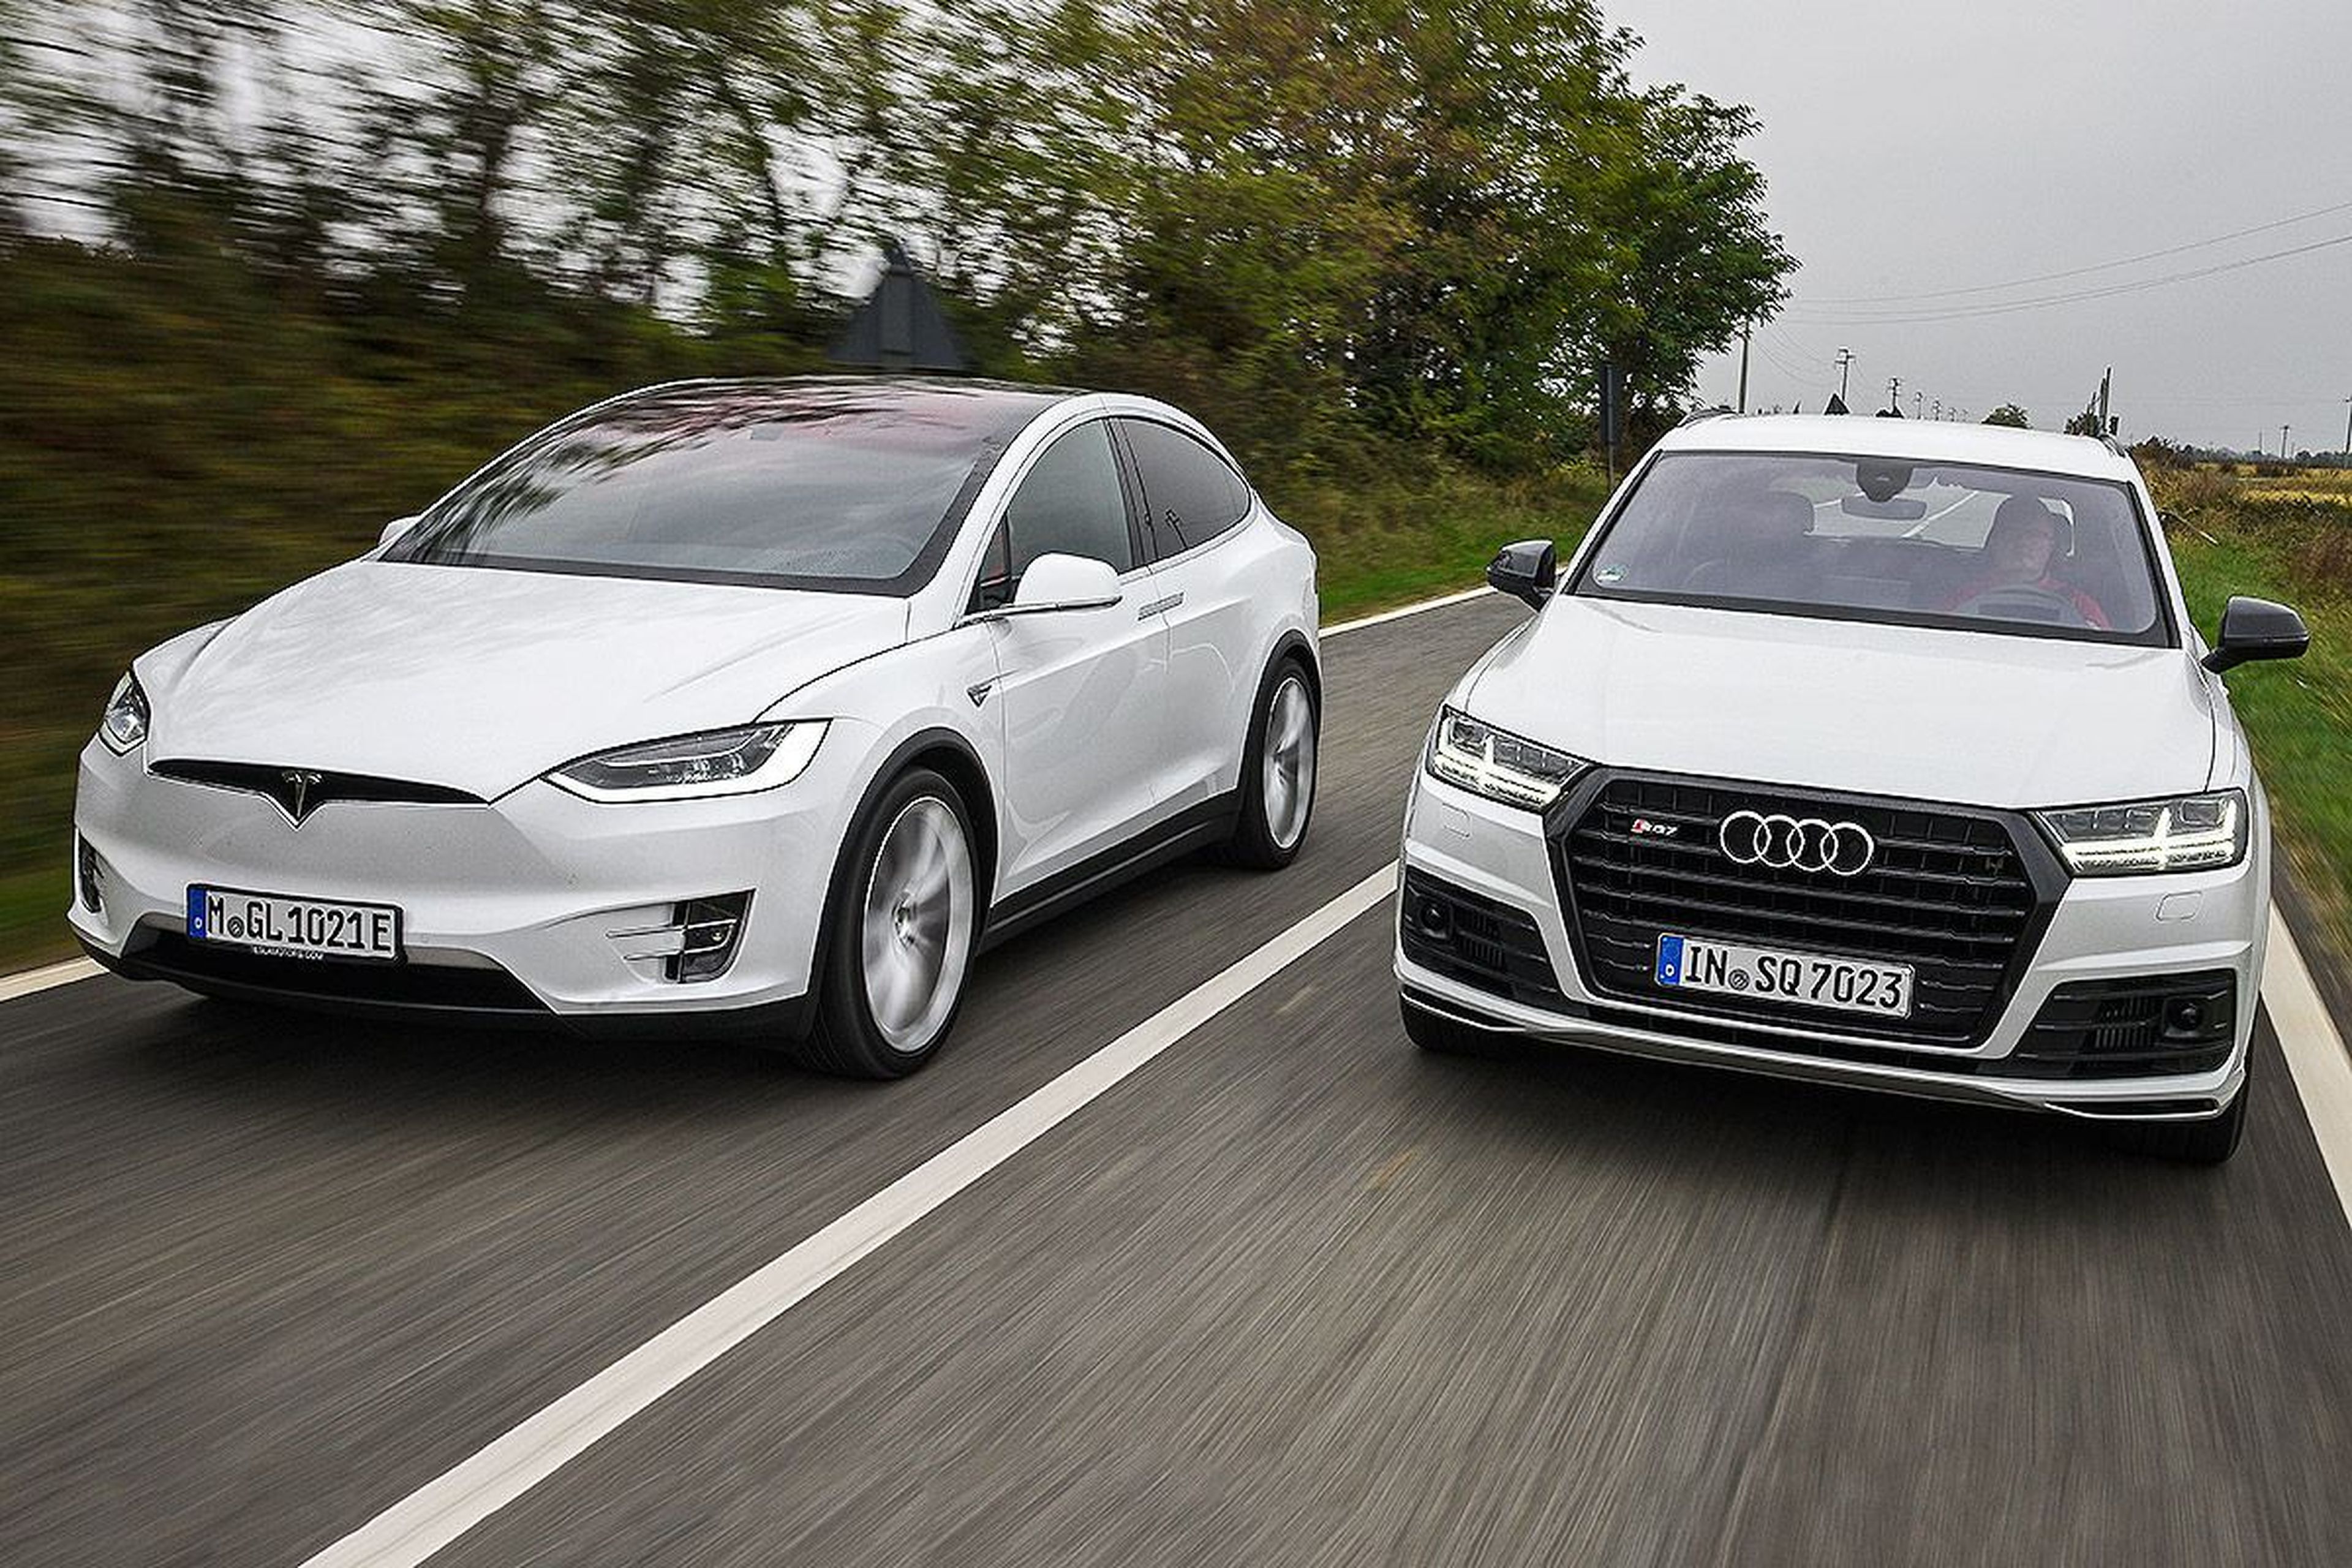 Cara a cara: Tesla Model X vs Audi SQ7